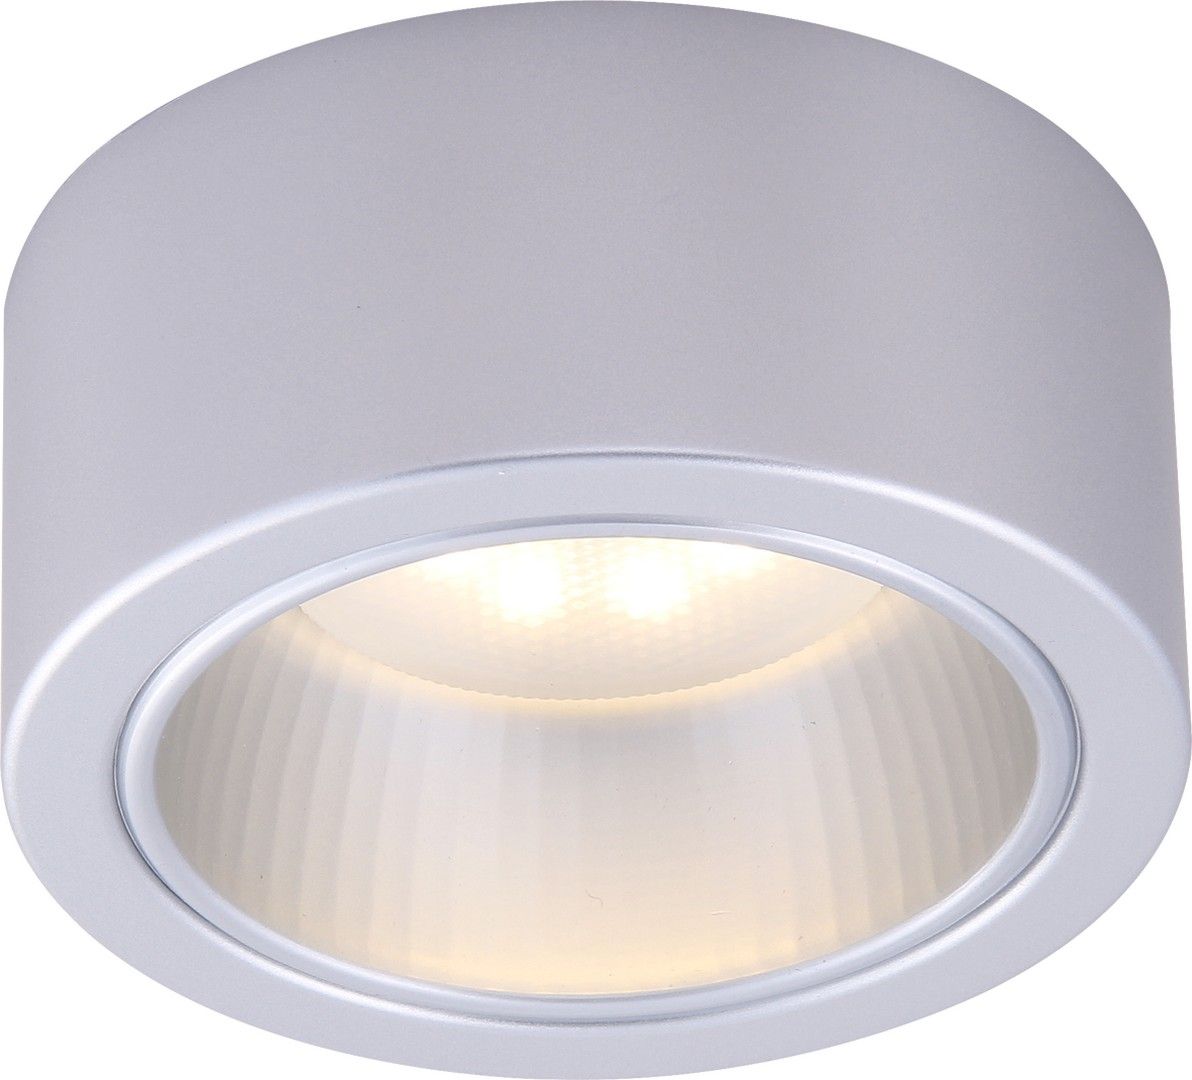 Накладной светильник Arte Lamp Effetto A5553PL-1GY, серый,13*13*6 см